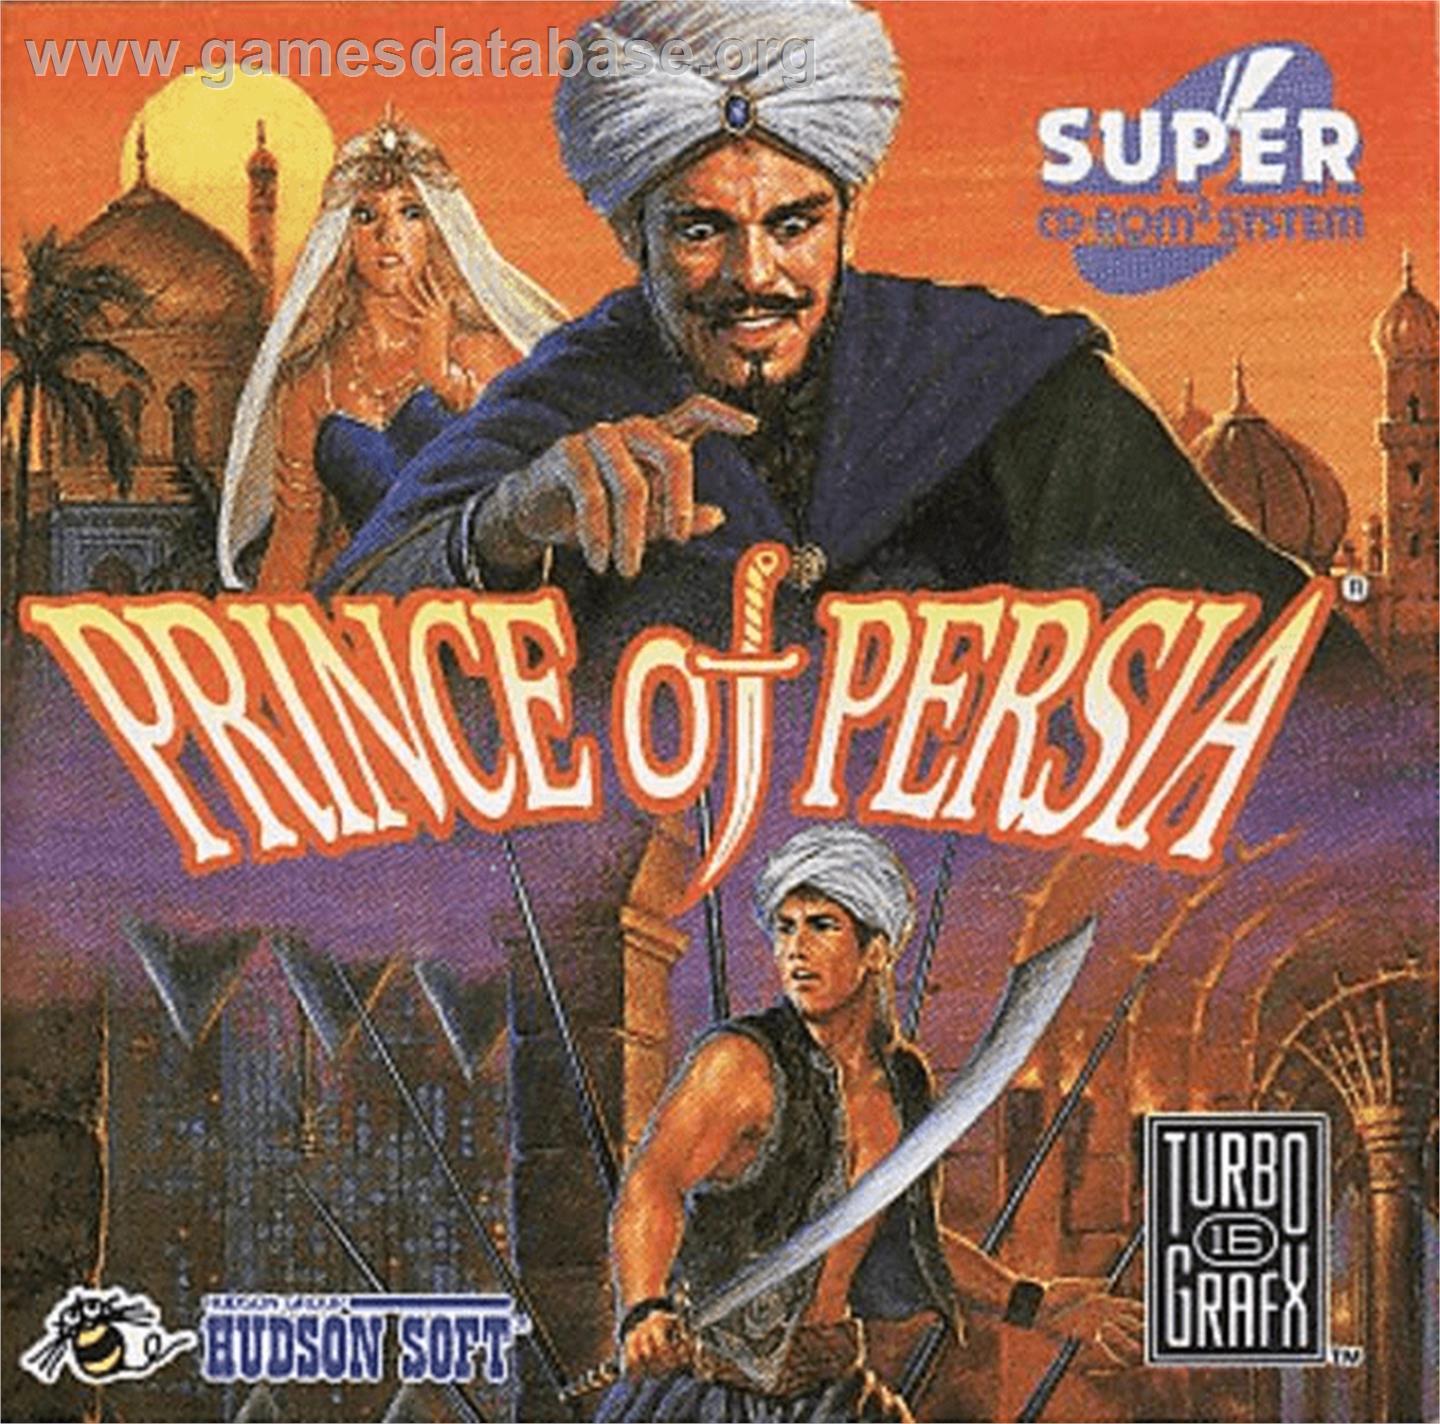 Prince of Persia - NEC TurboGrafx CD - Artwork - Box